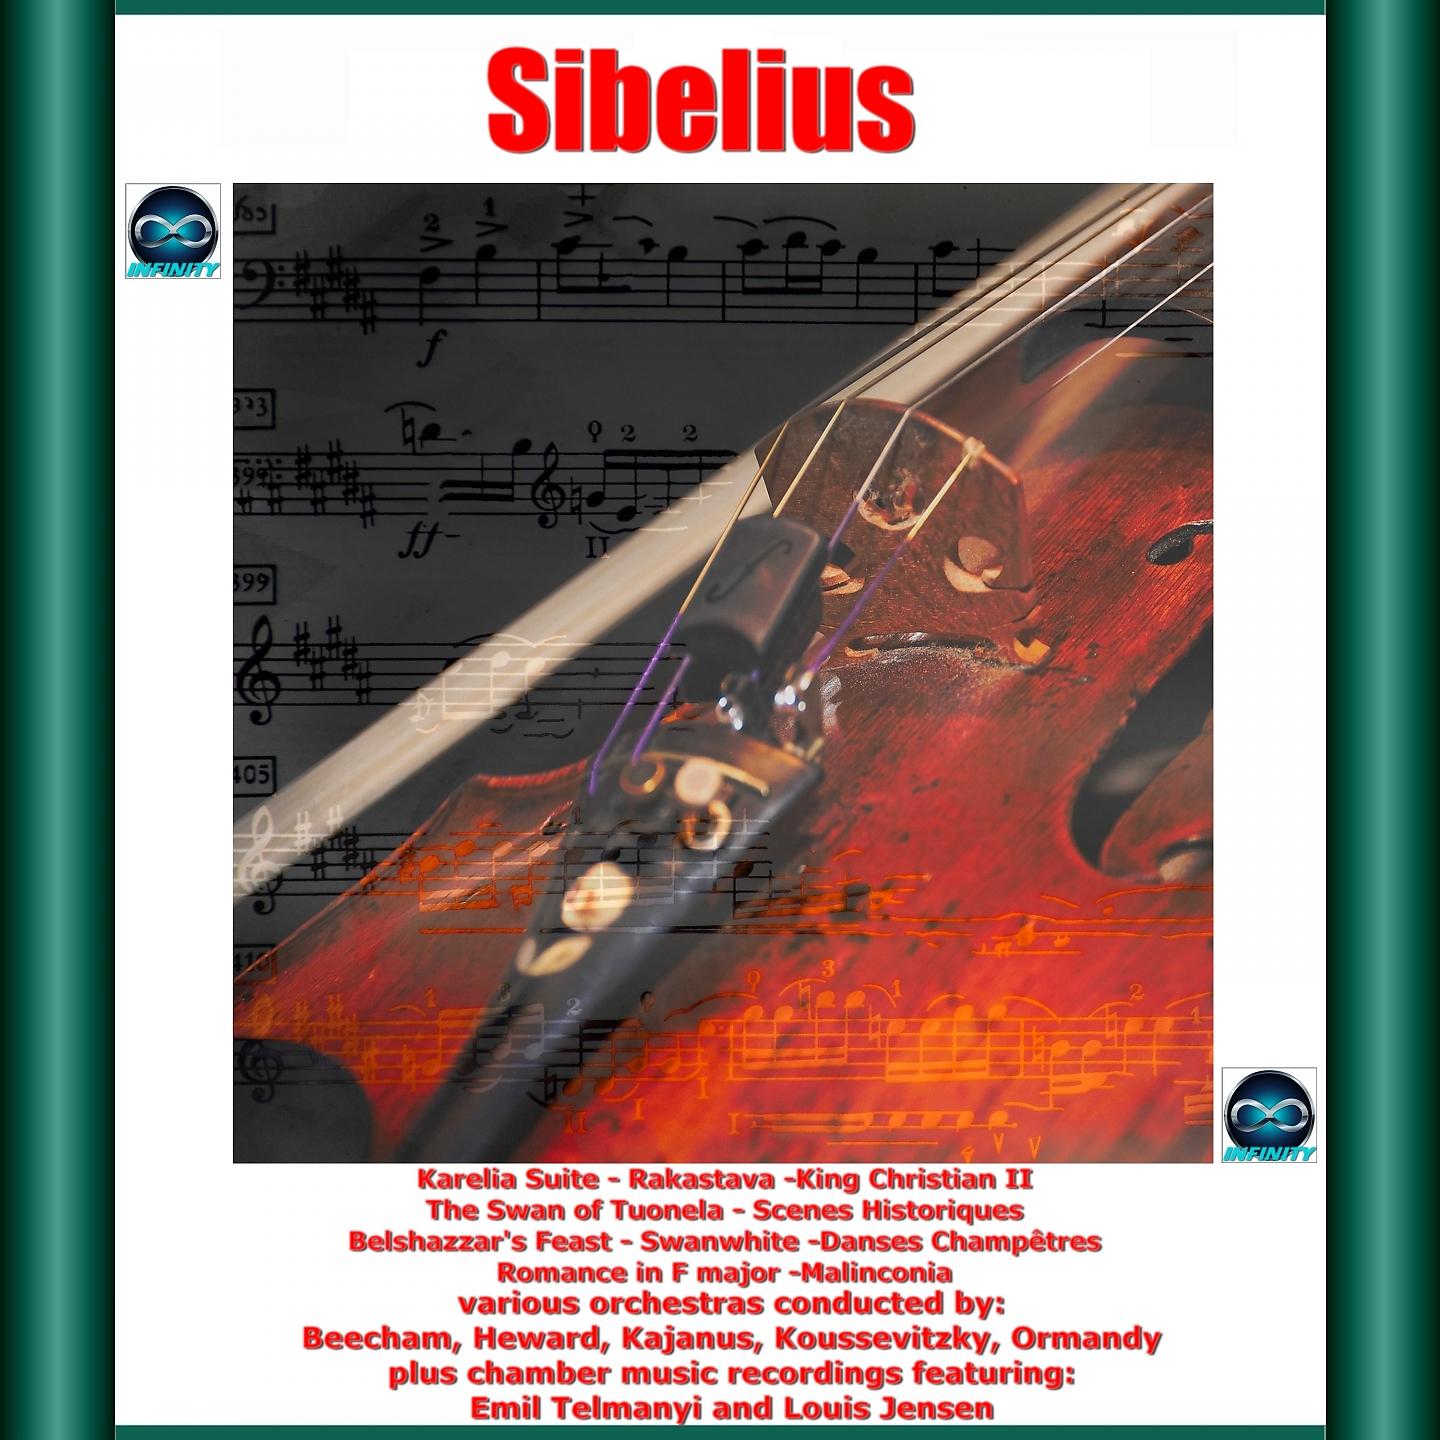 Постер альбома Sibelius: Karelia Suite - Rakastava - King Christian II - The Swan of Tuonela - Scenes Historiques - Belshazzar's Feast - Swanwhite - Danses Champêtres - Romance in F Major - Malinconia